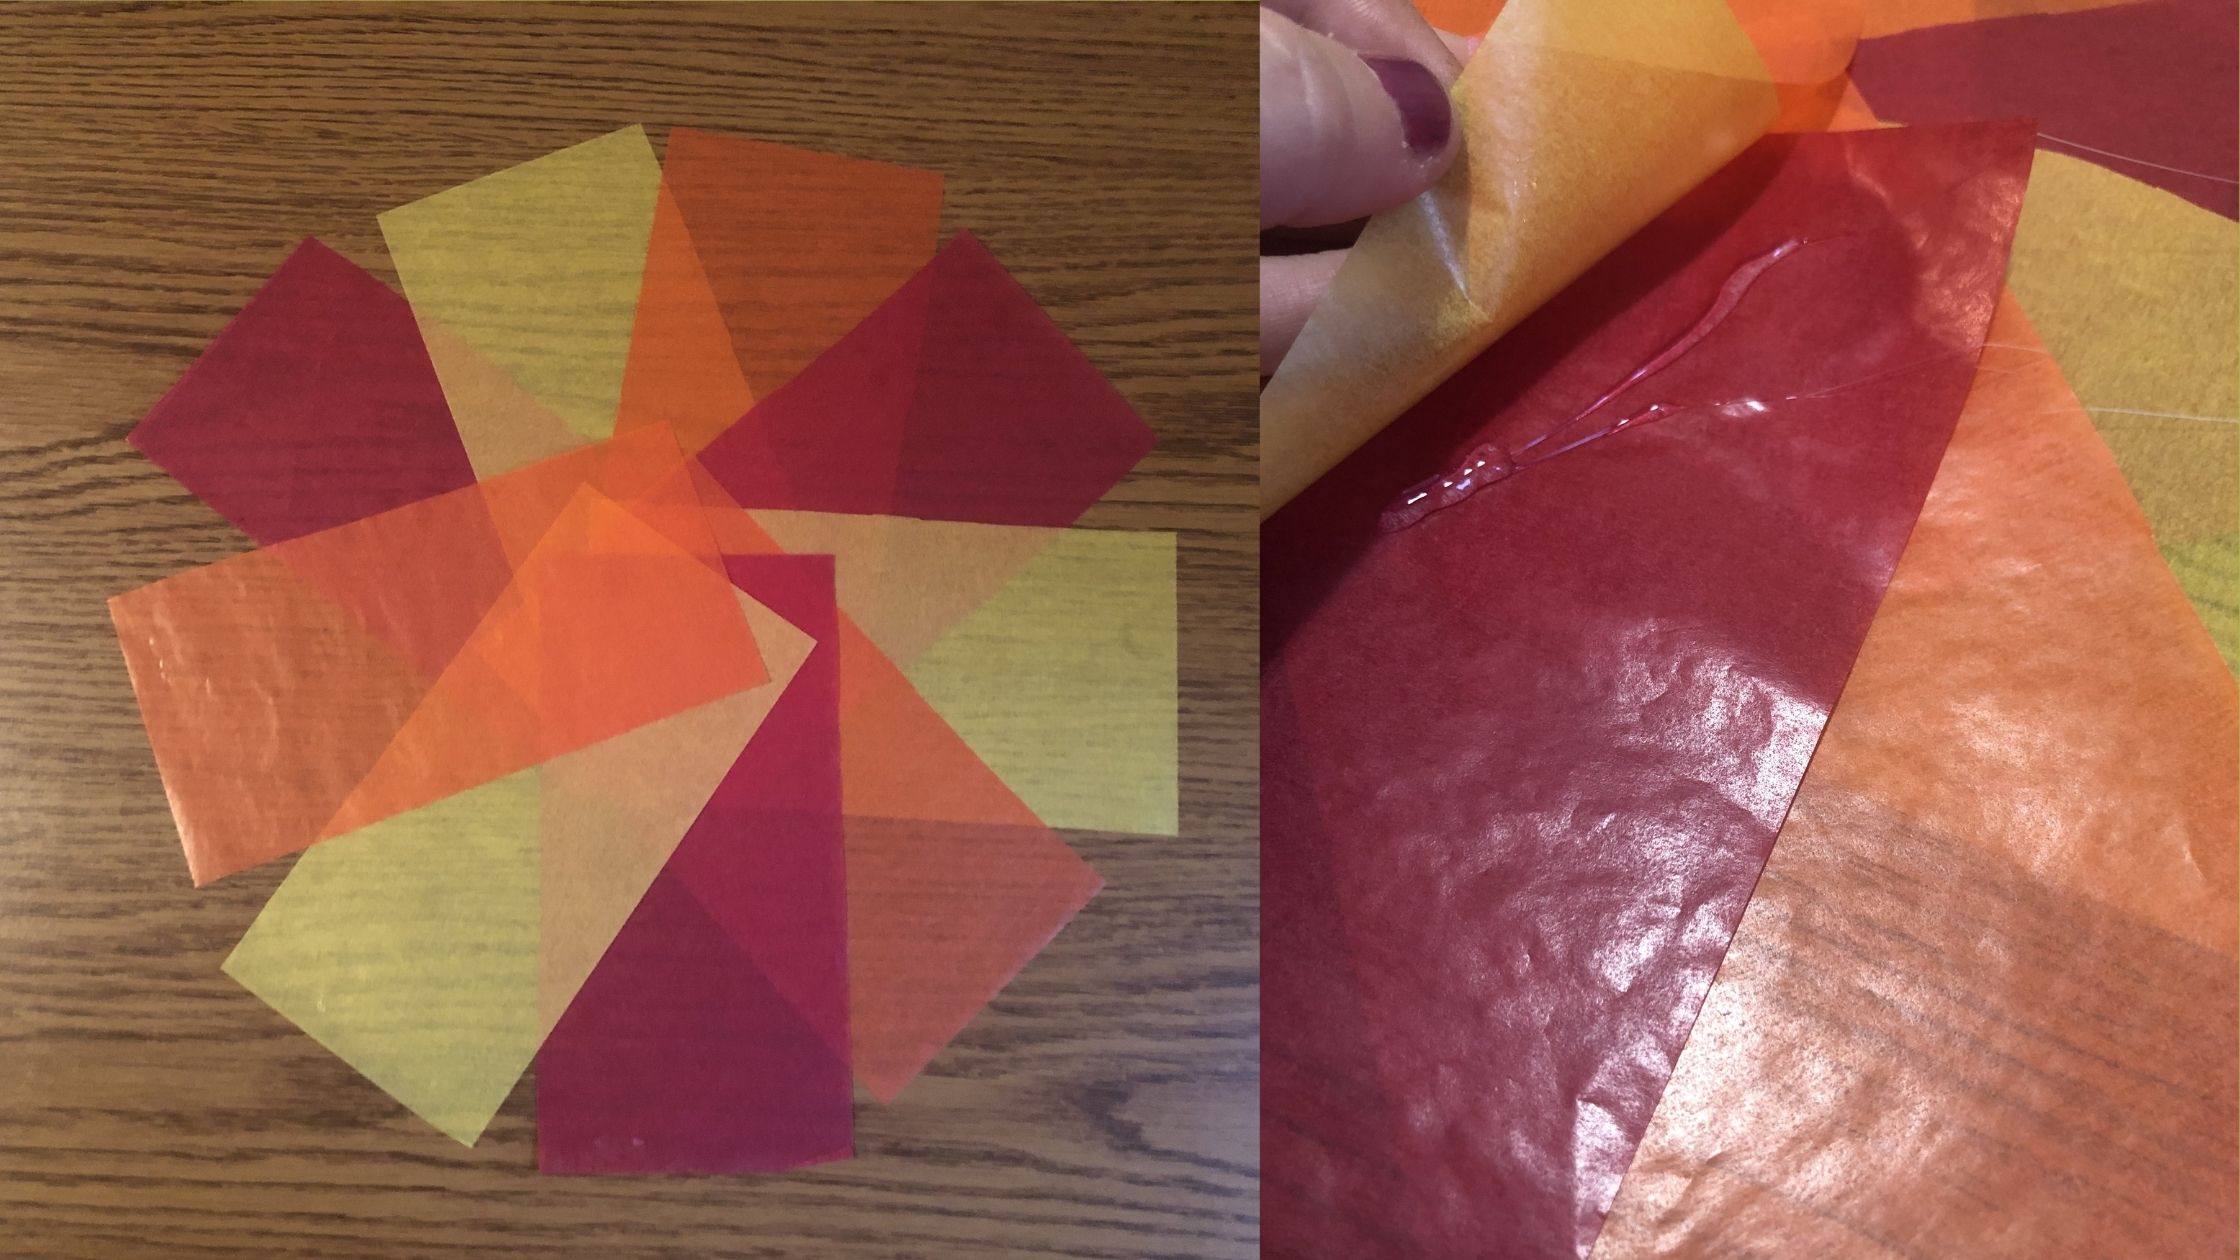 piros, narancs és sárga transzparenspapír csíkok kör alakban az asztalon